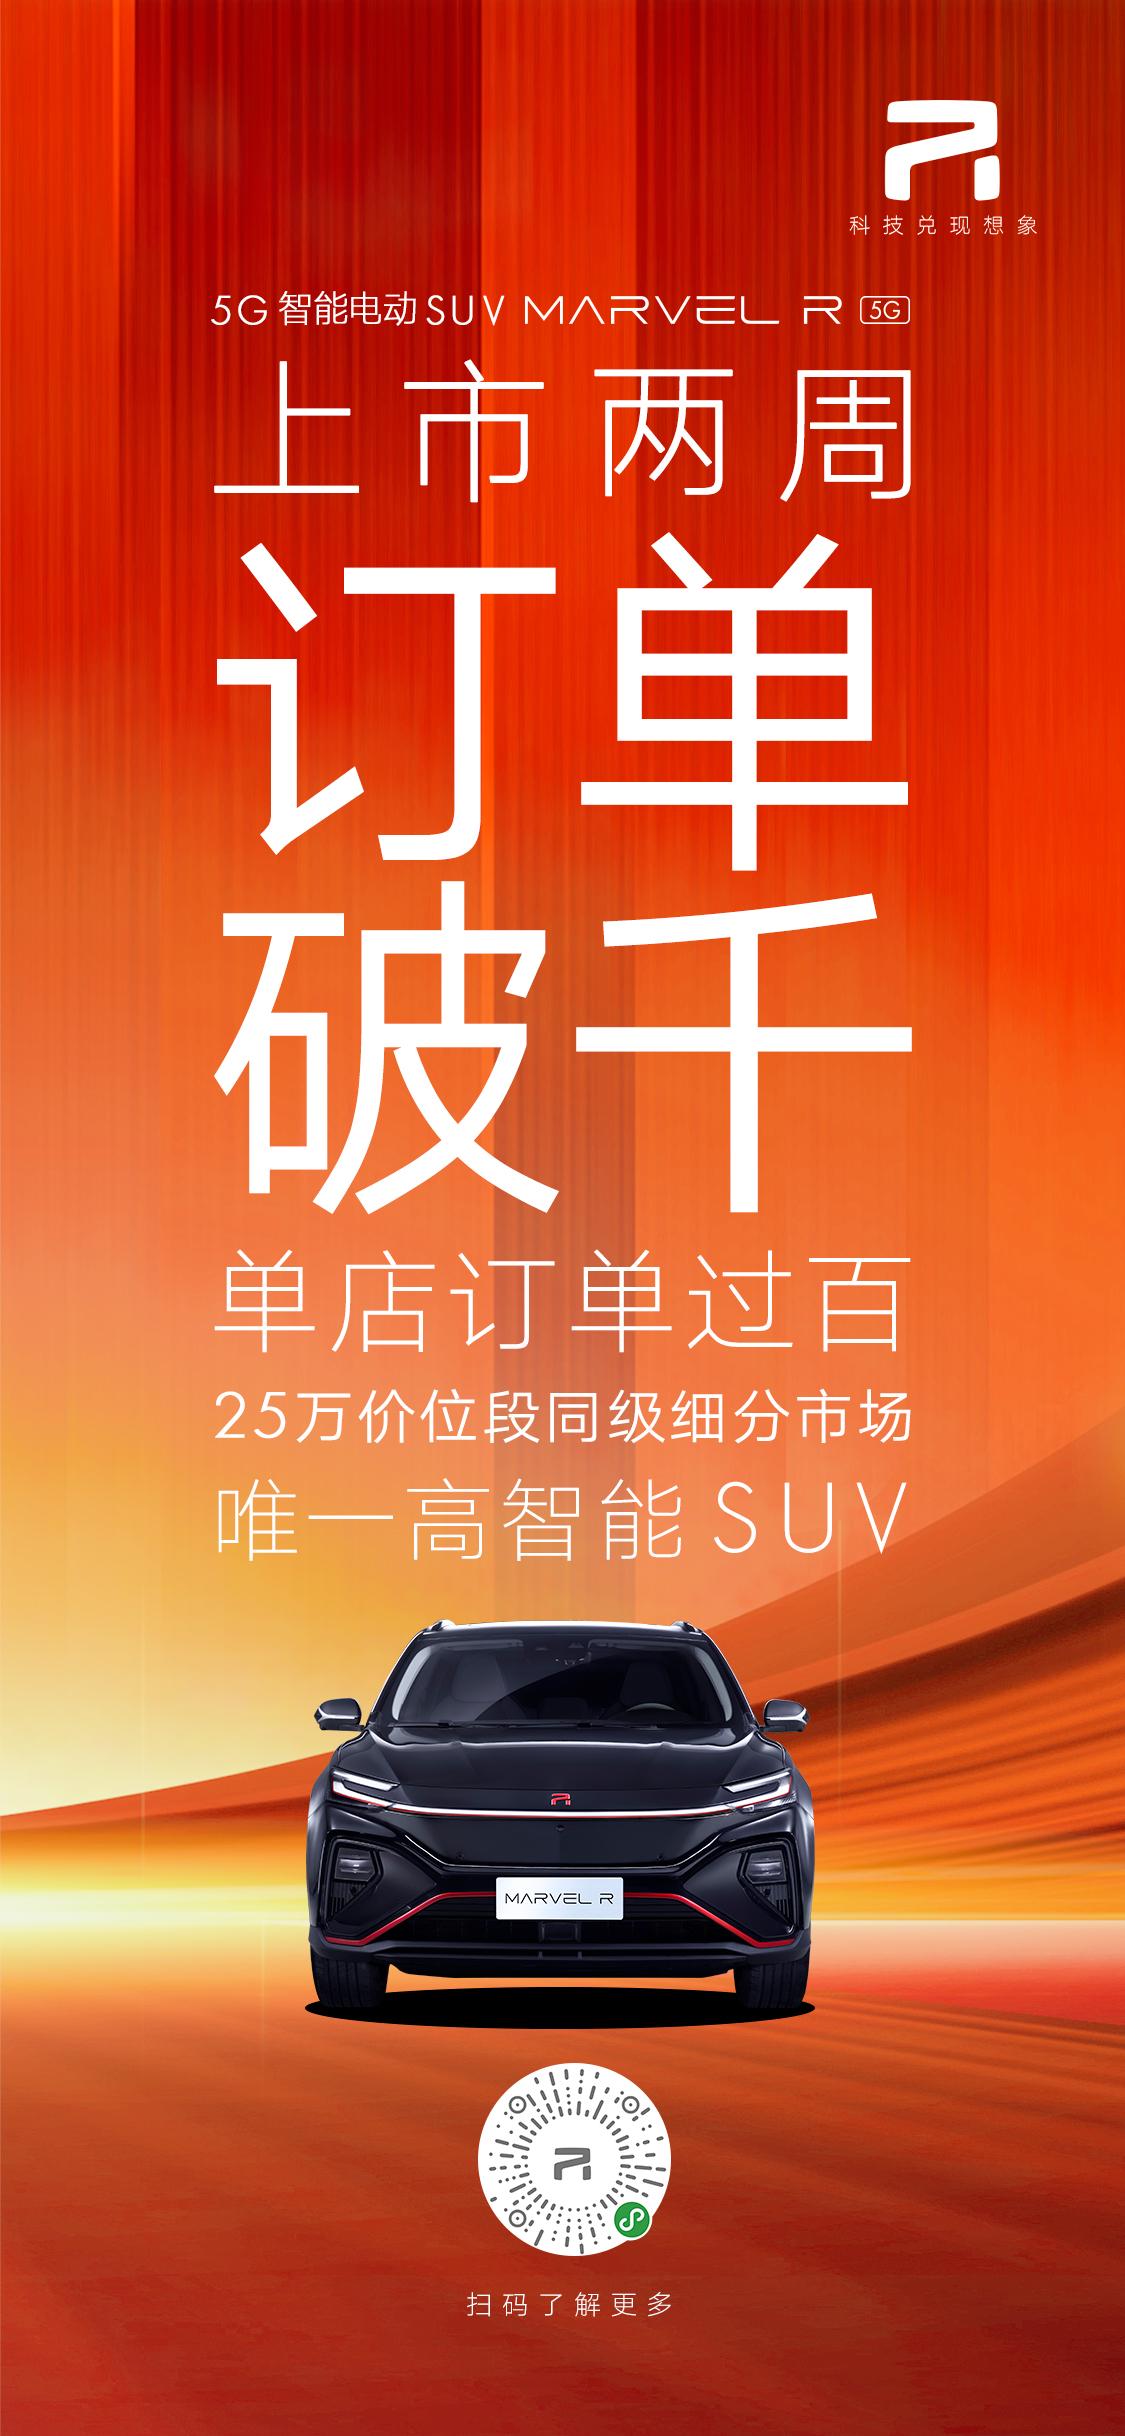 25万价位高智能SUV唯一选择 MARVEL R两周订单达1267张、单店最高订单过百